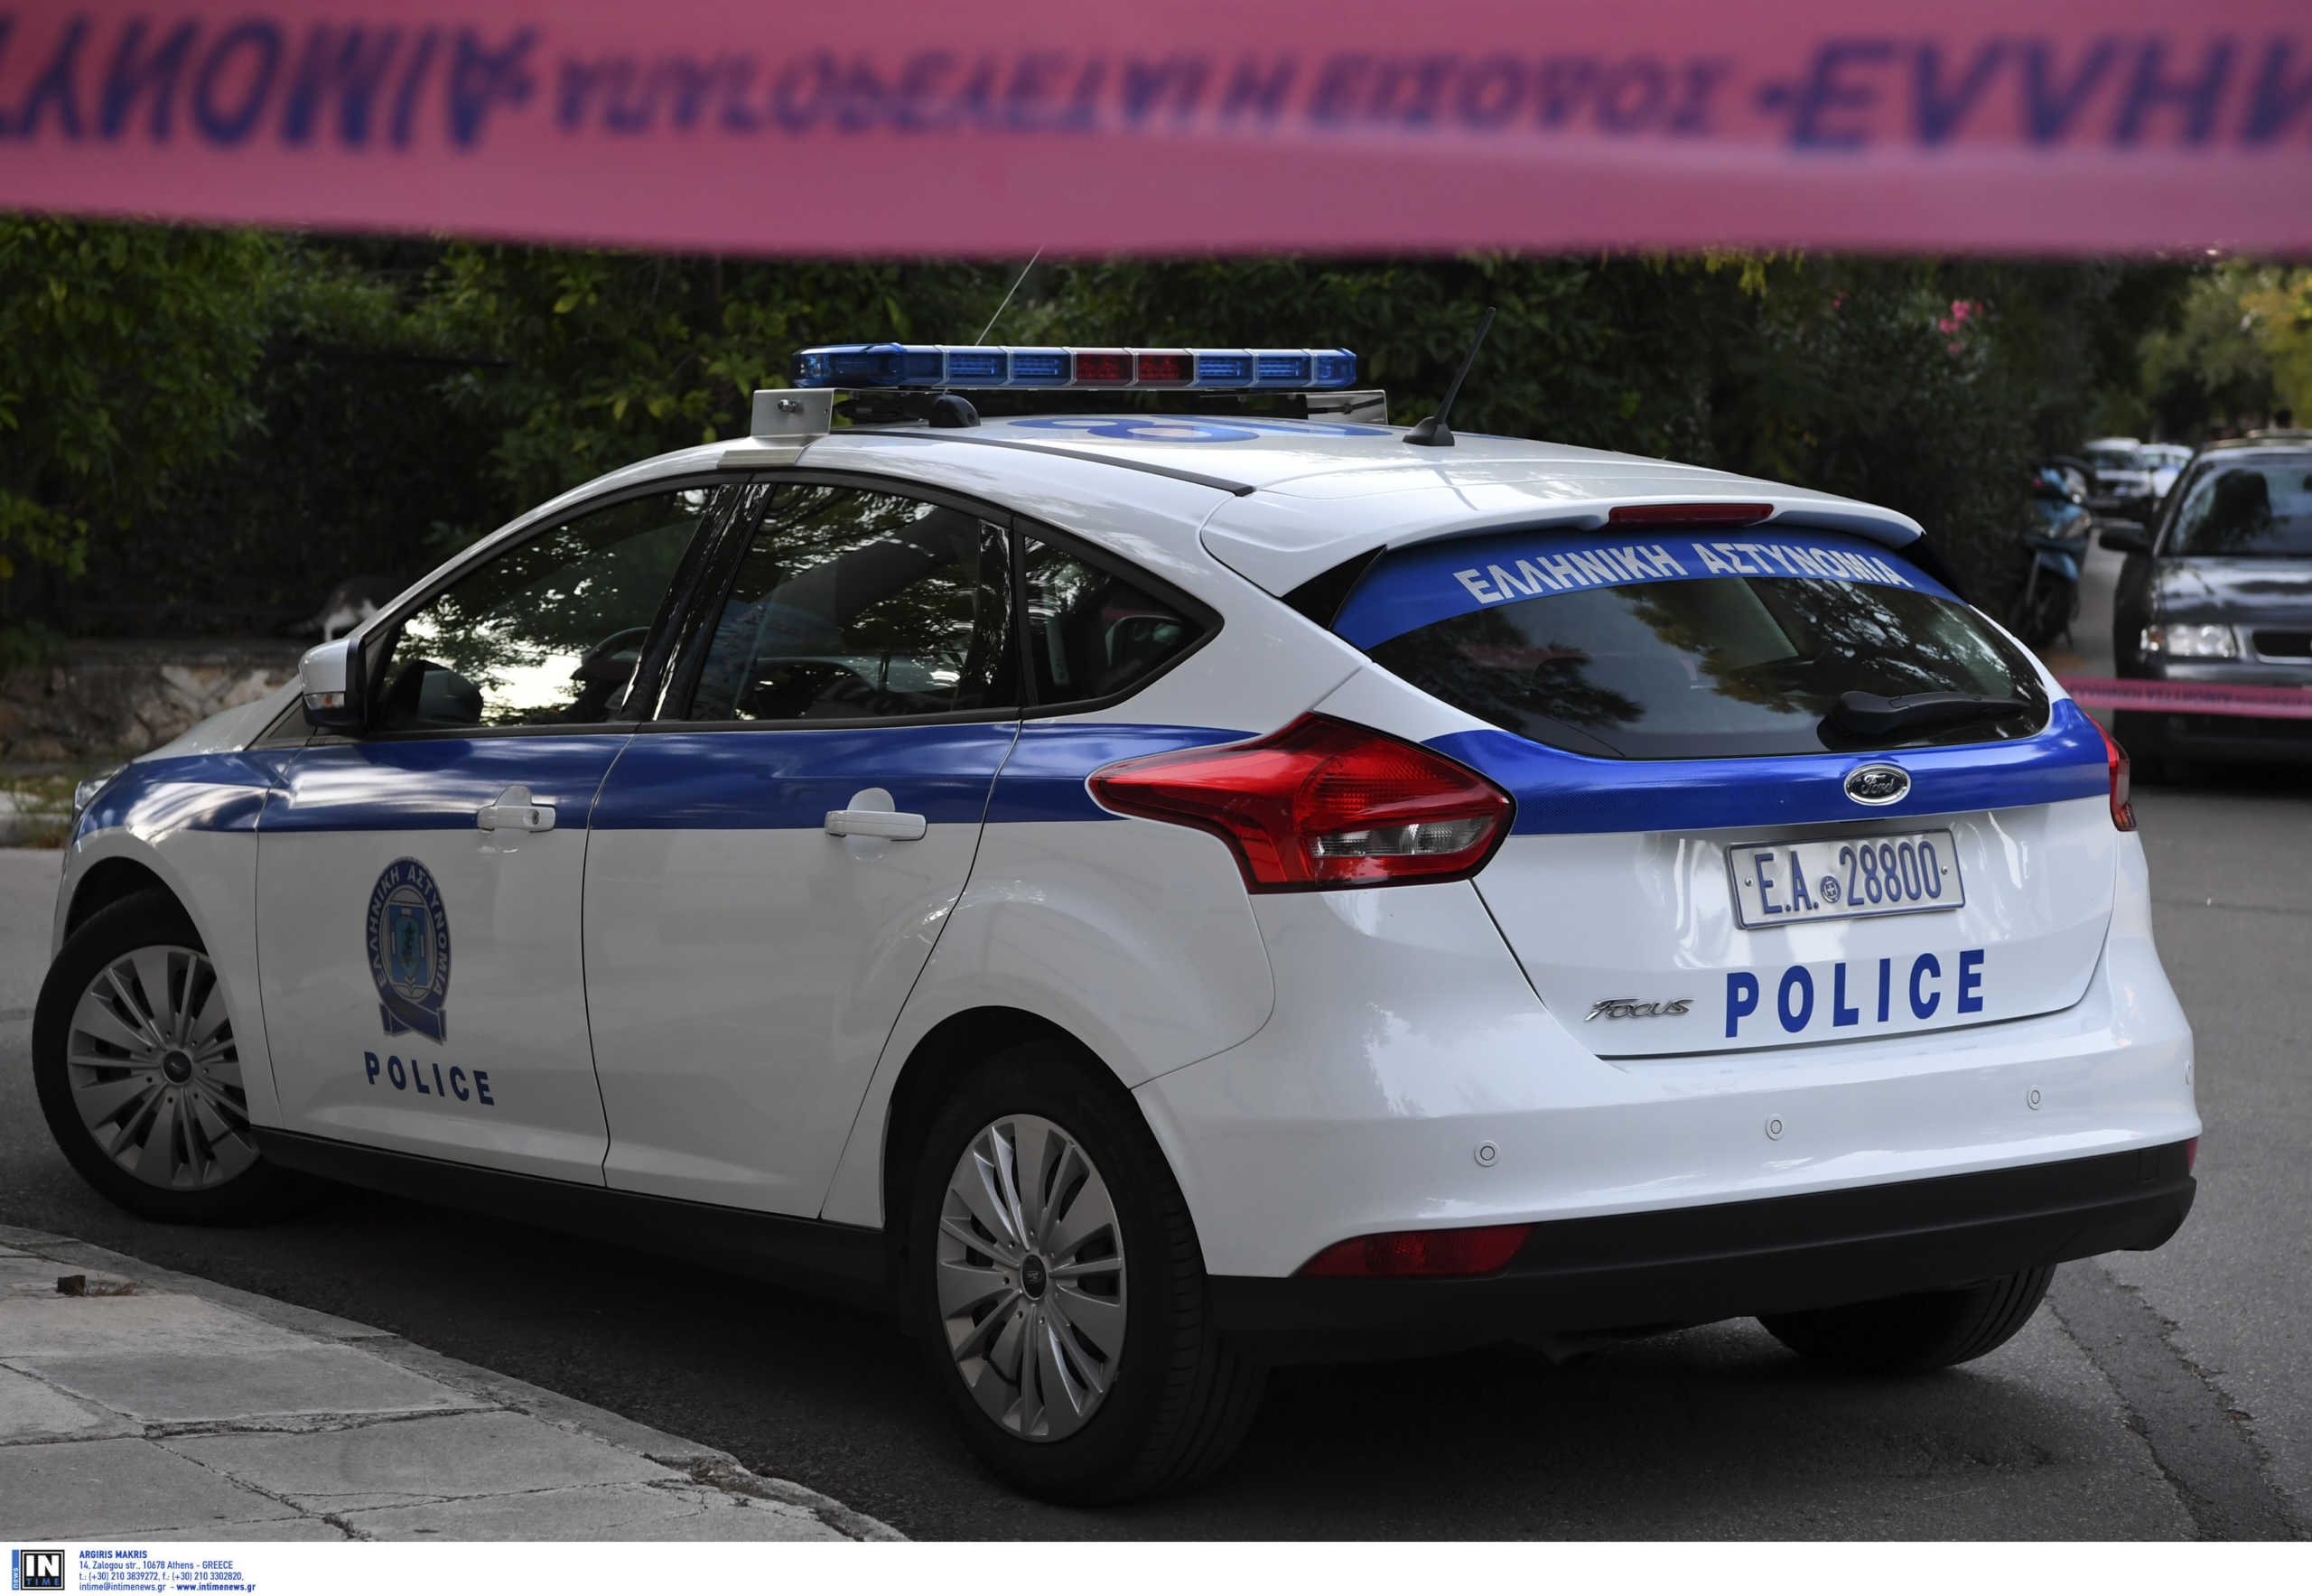 Συμμορία ρήμαζε σπίτια, μαγαζιά και αυτοκίνητα στην Αττική – Τρεις συλλήψεις, οι δύο ανήλικοι